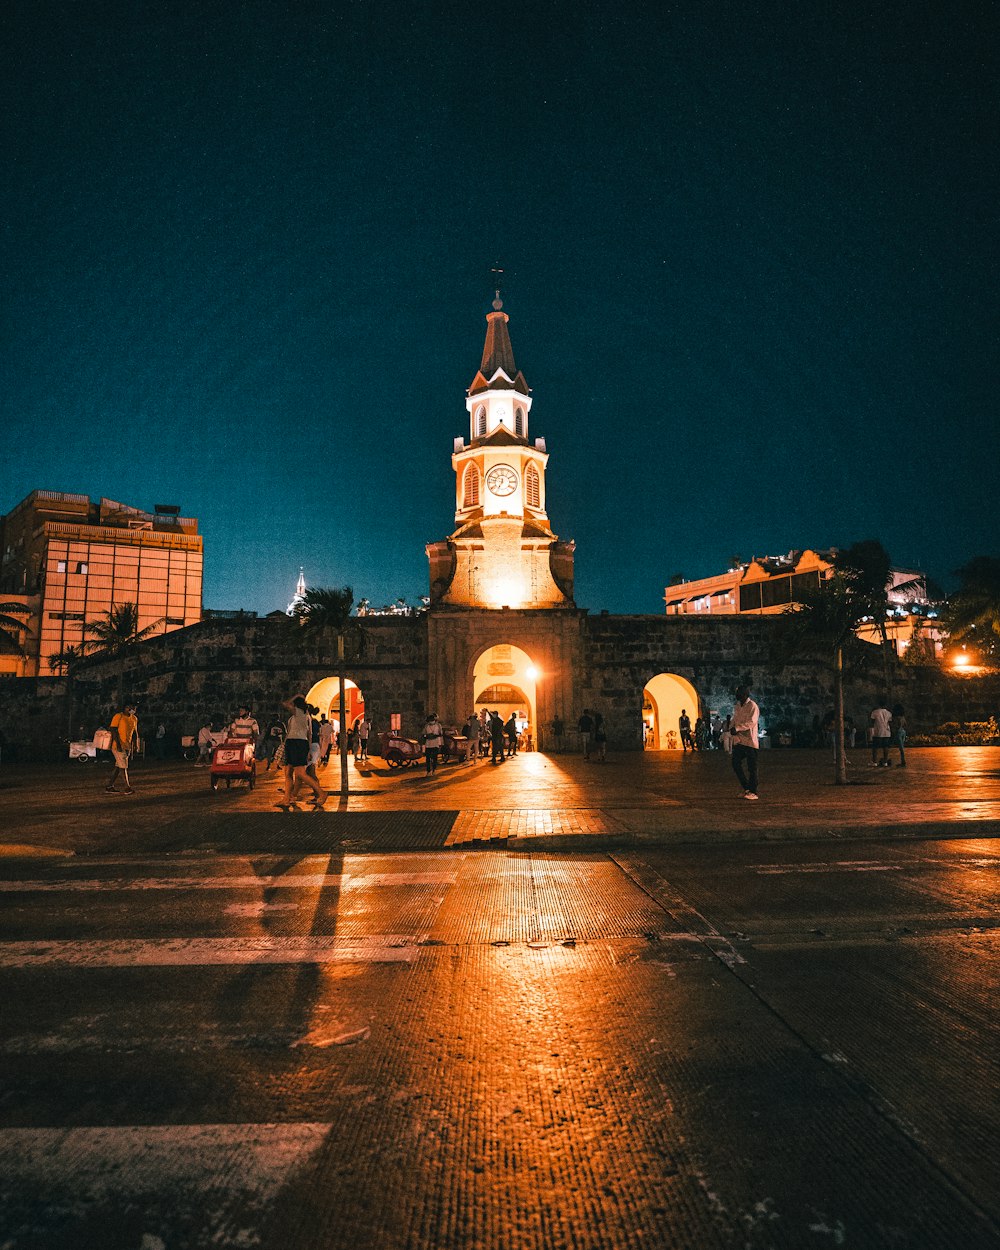 Une tour de l’horloge illuminée la nuit dans une ville